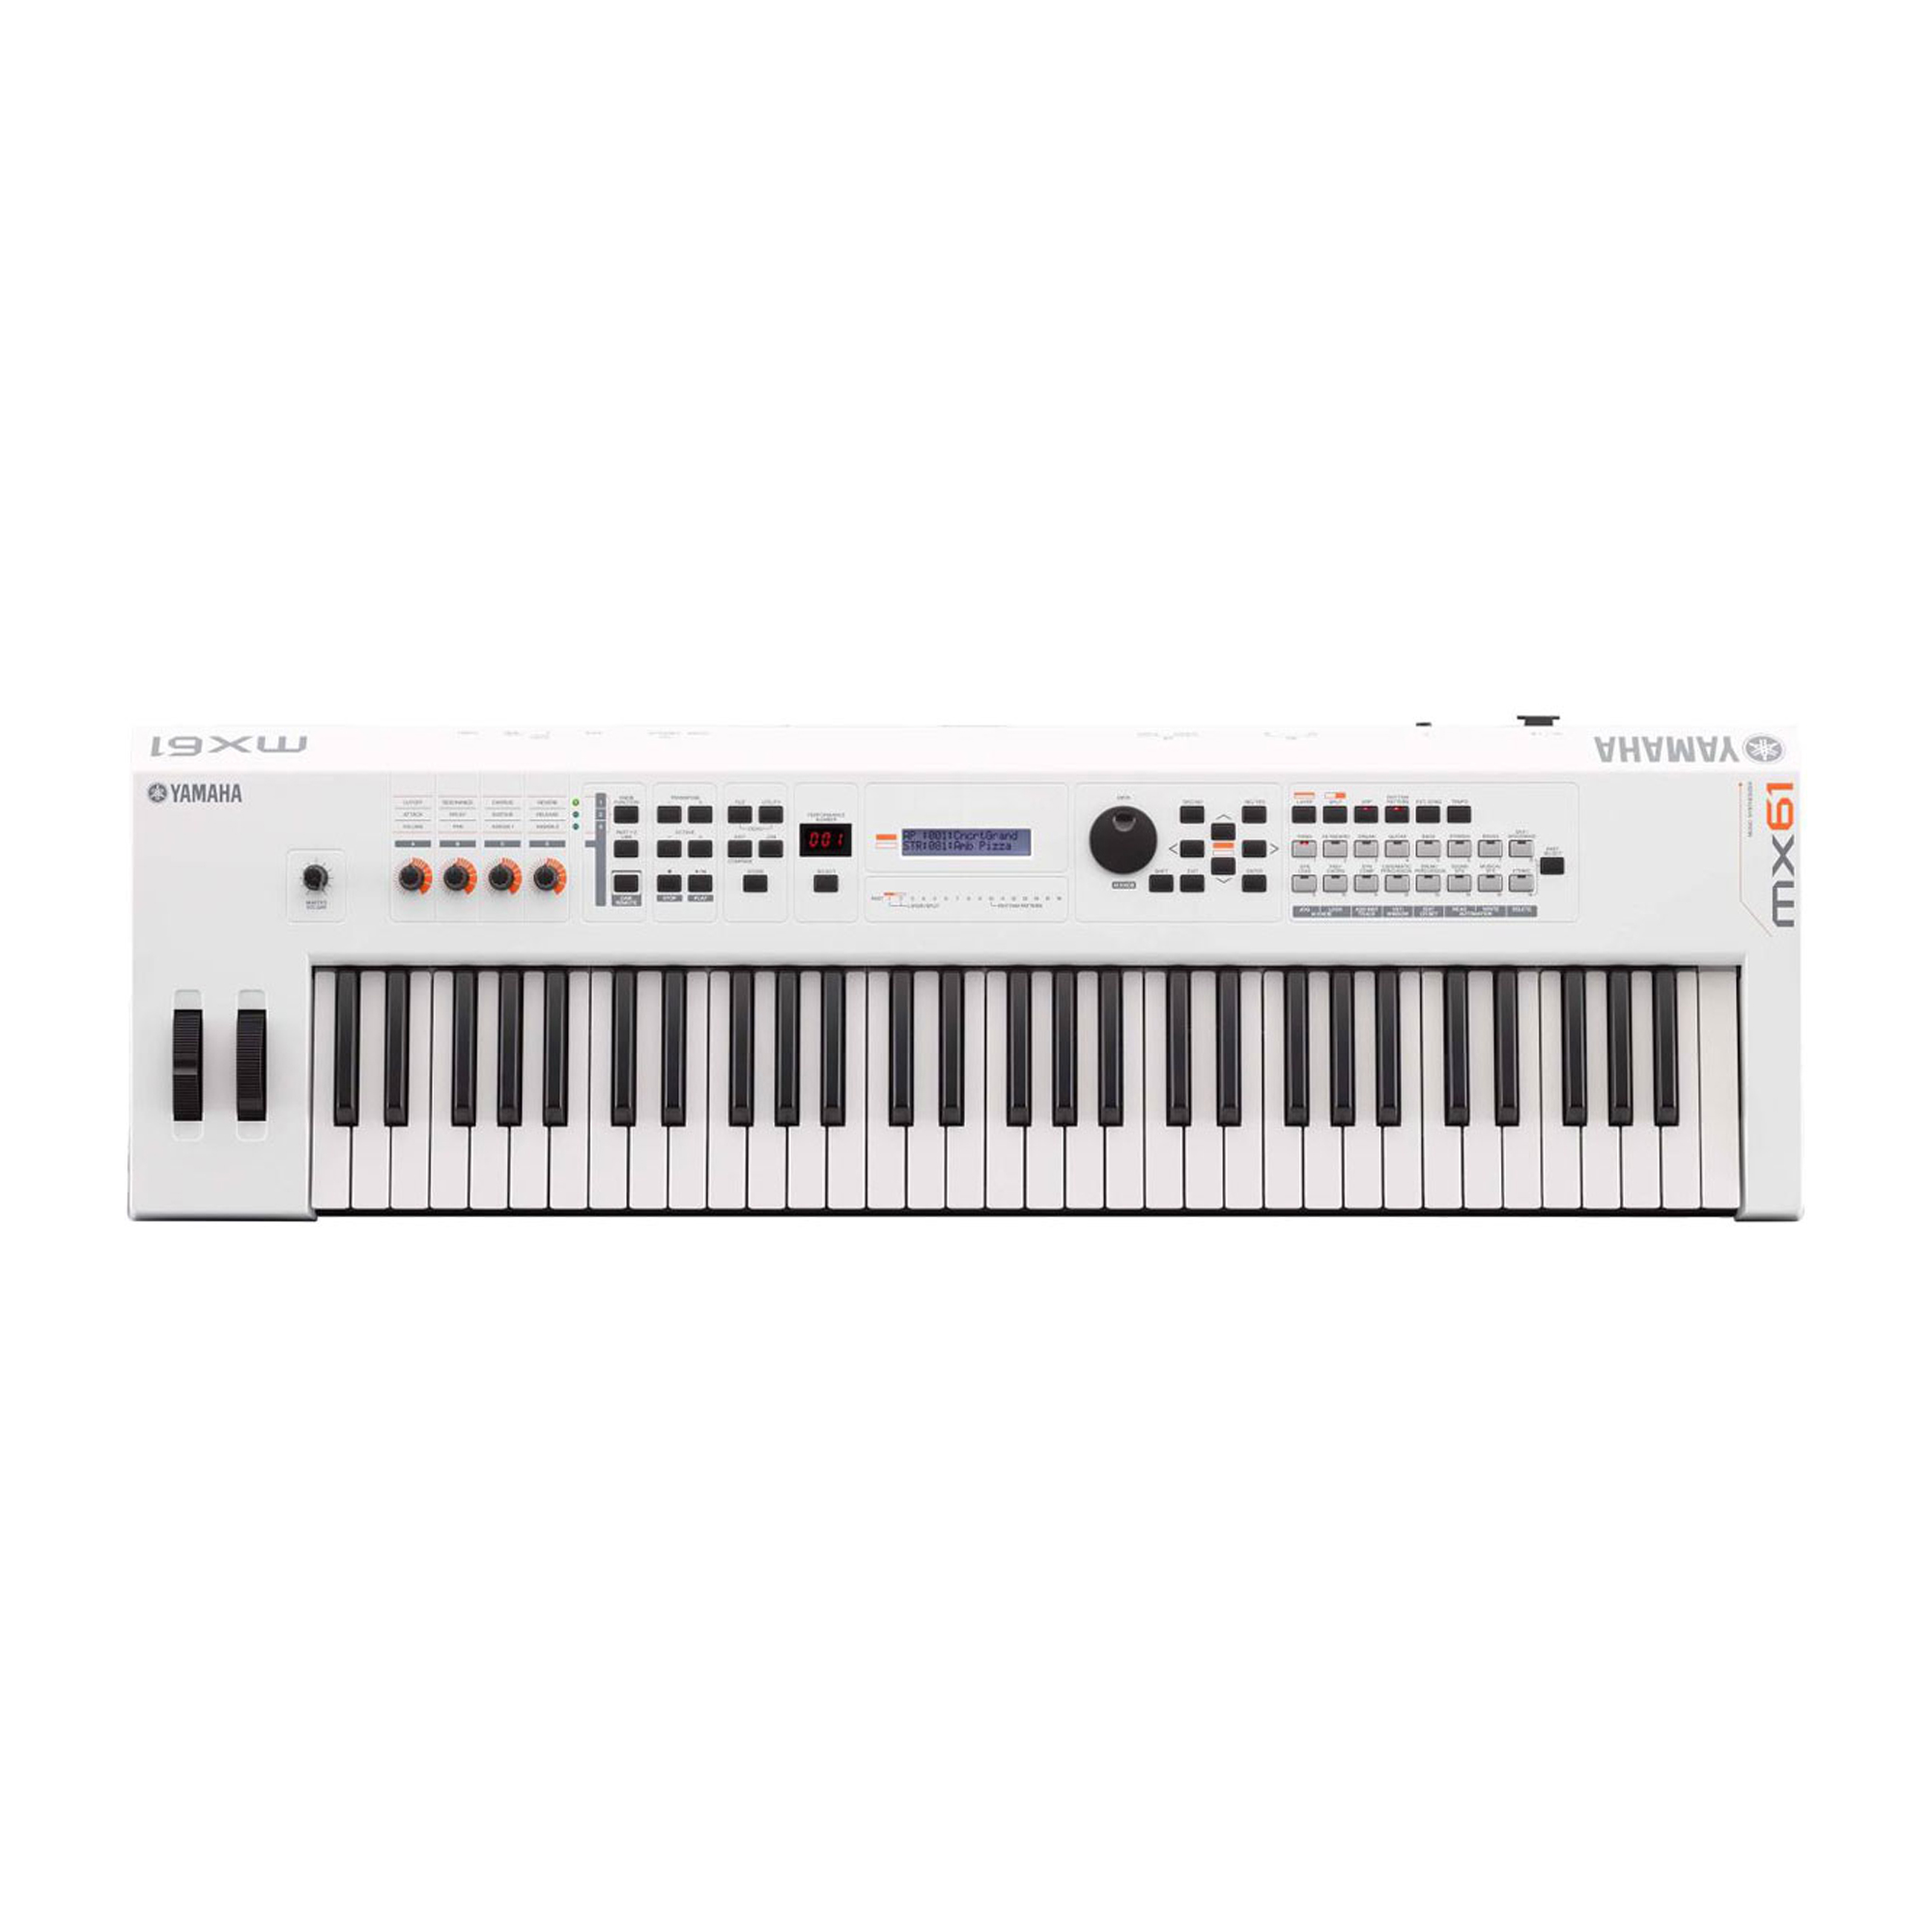 Yamaha MX61 Music Production Synthesizer Black 61-Key 